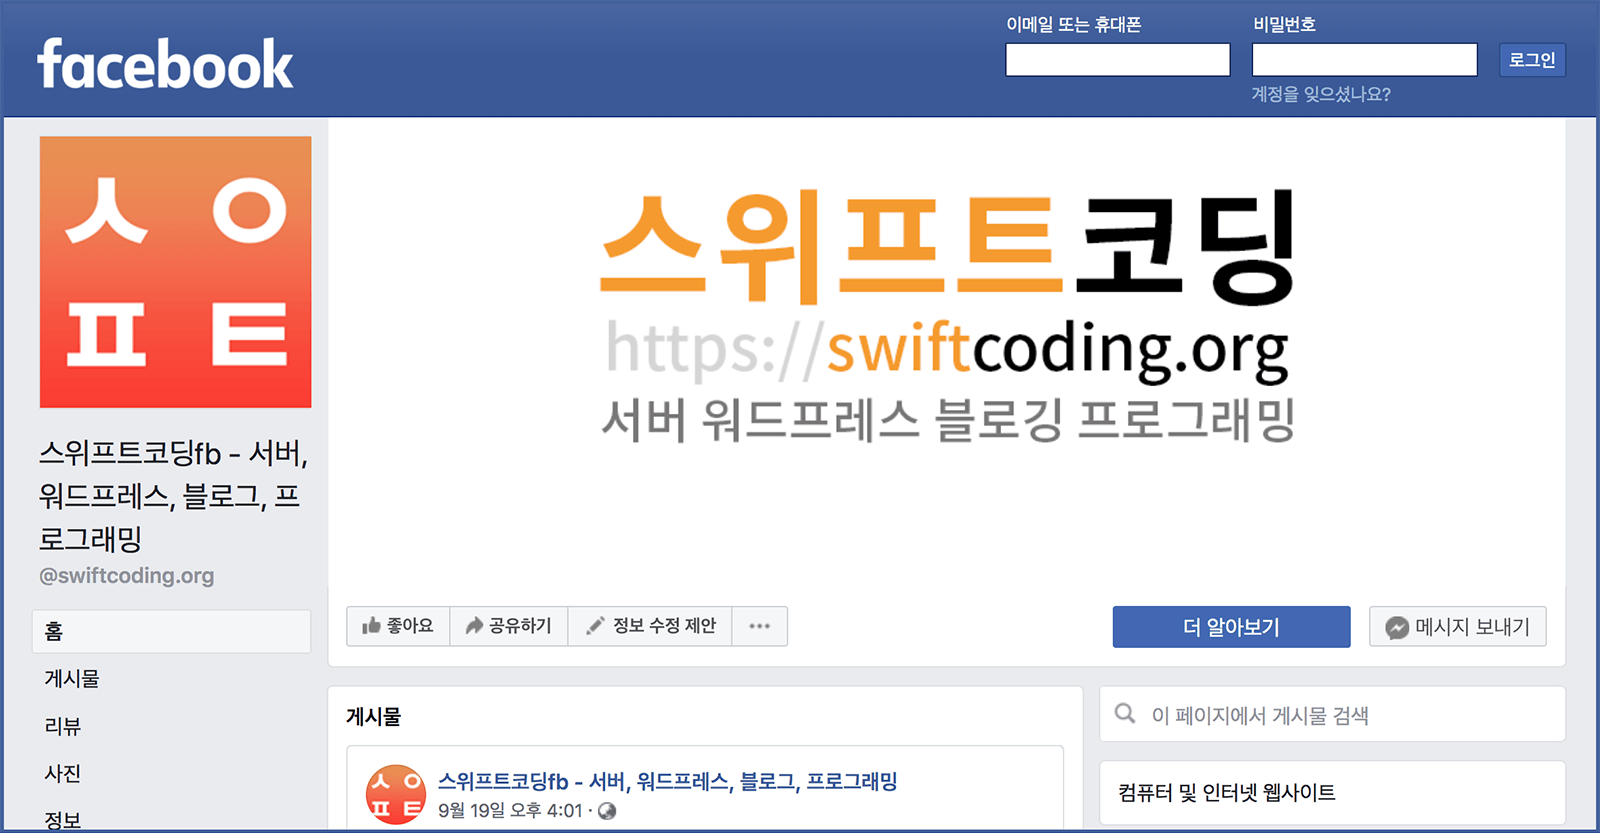 페이스북 사이트에 마련된 스위프트코딩fb 페이지